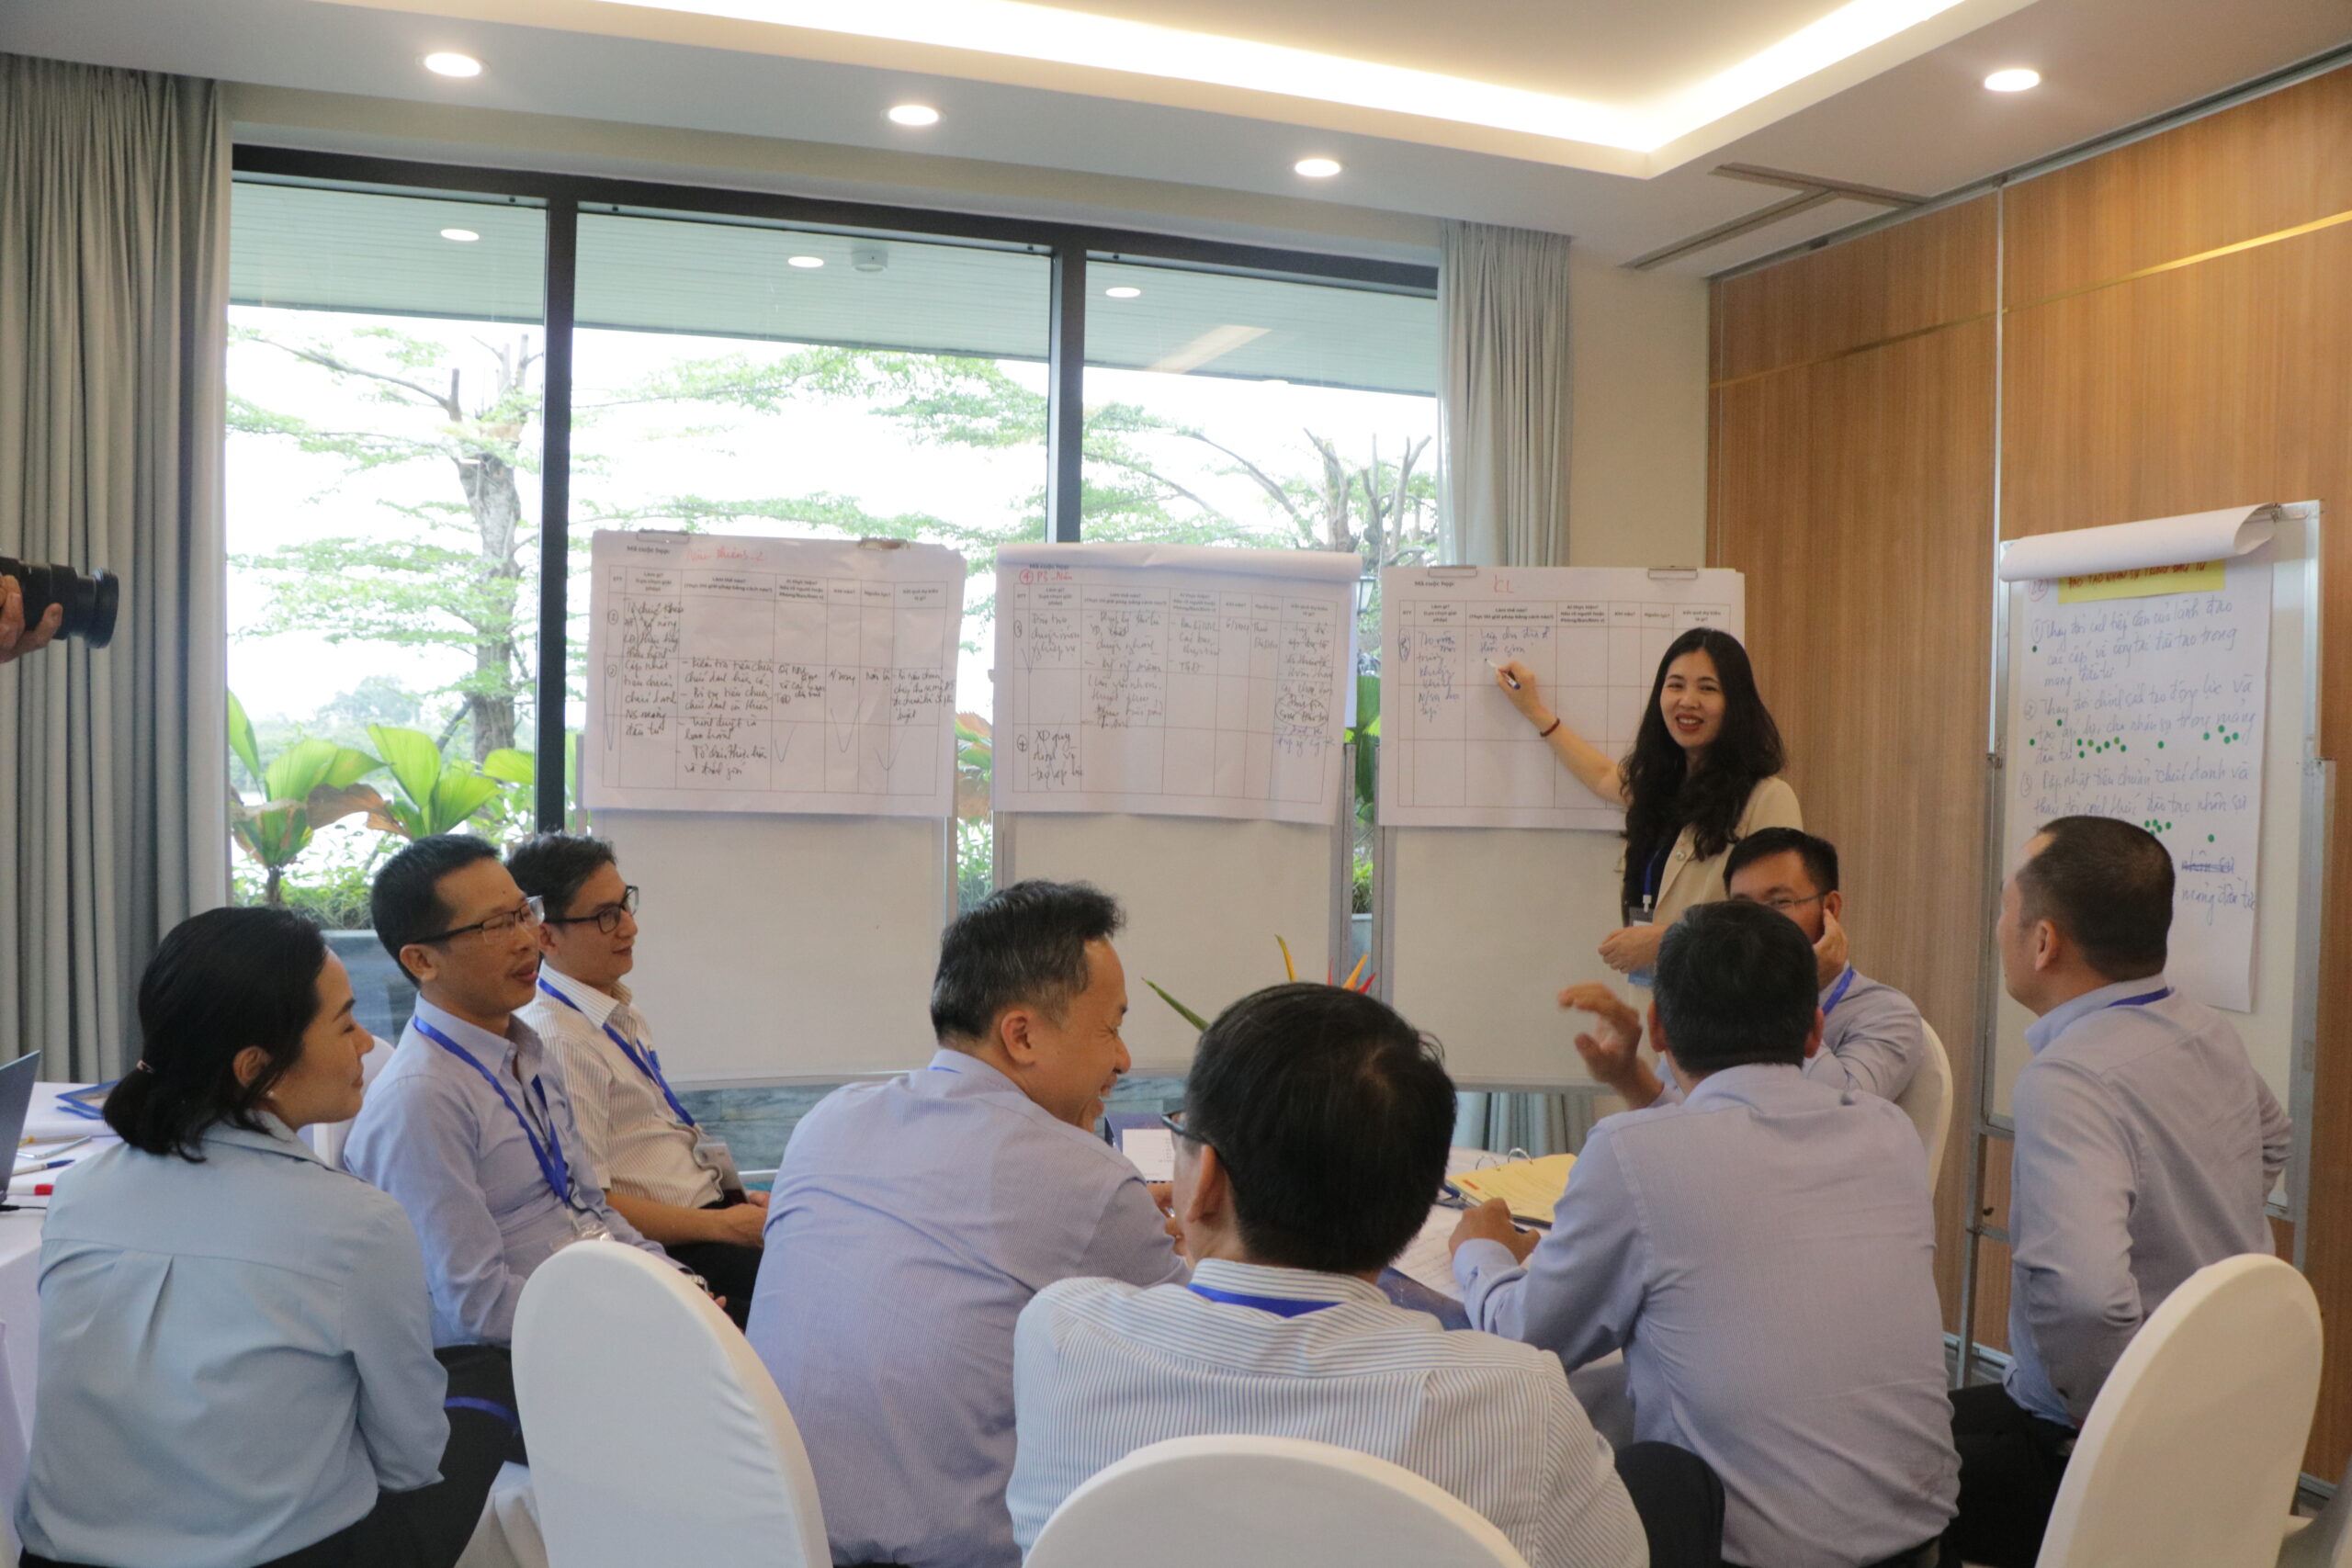 TS. Dương Thu, Viện trưởng Viện Nghiên cứu Phát triển Lãnh đạo Chiến lược hướng dẫn phiên thảo luận